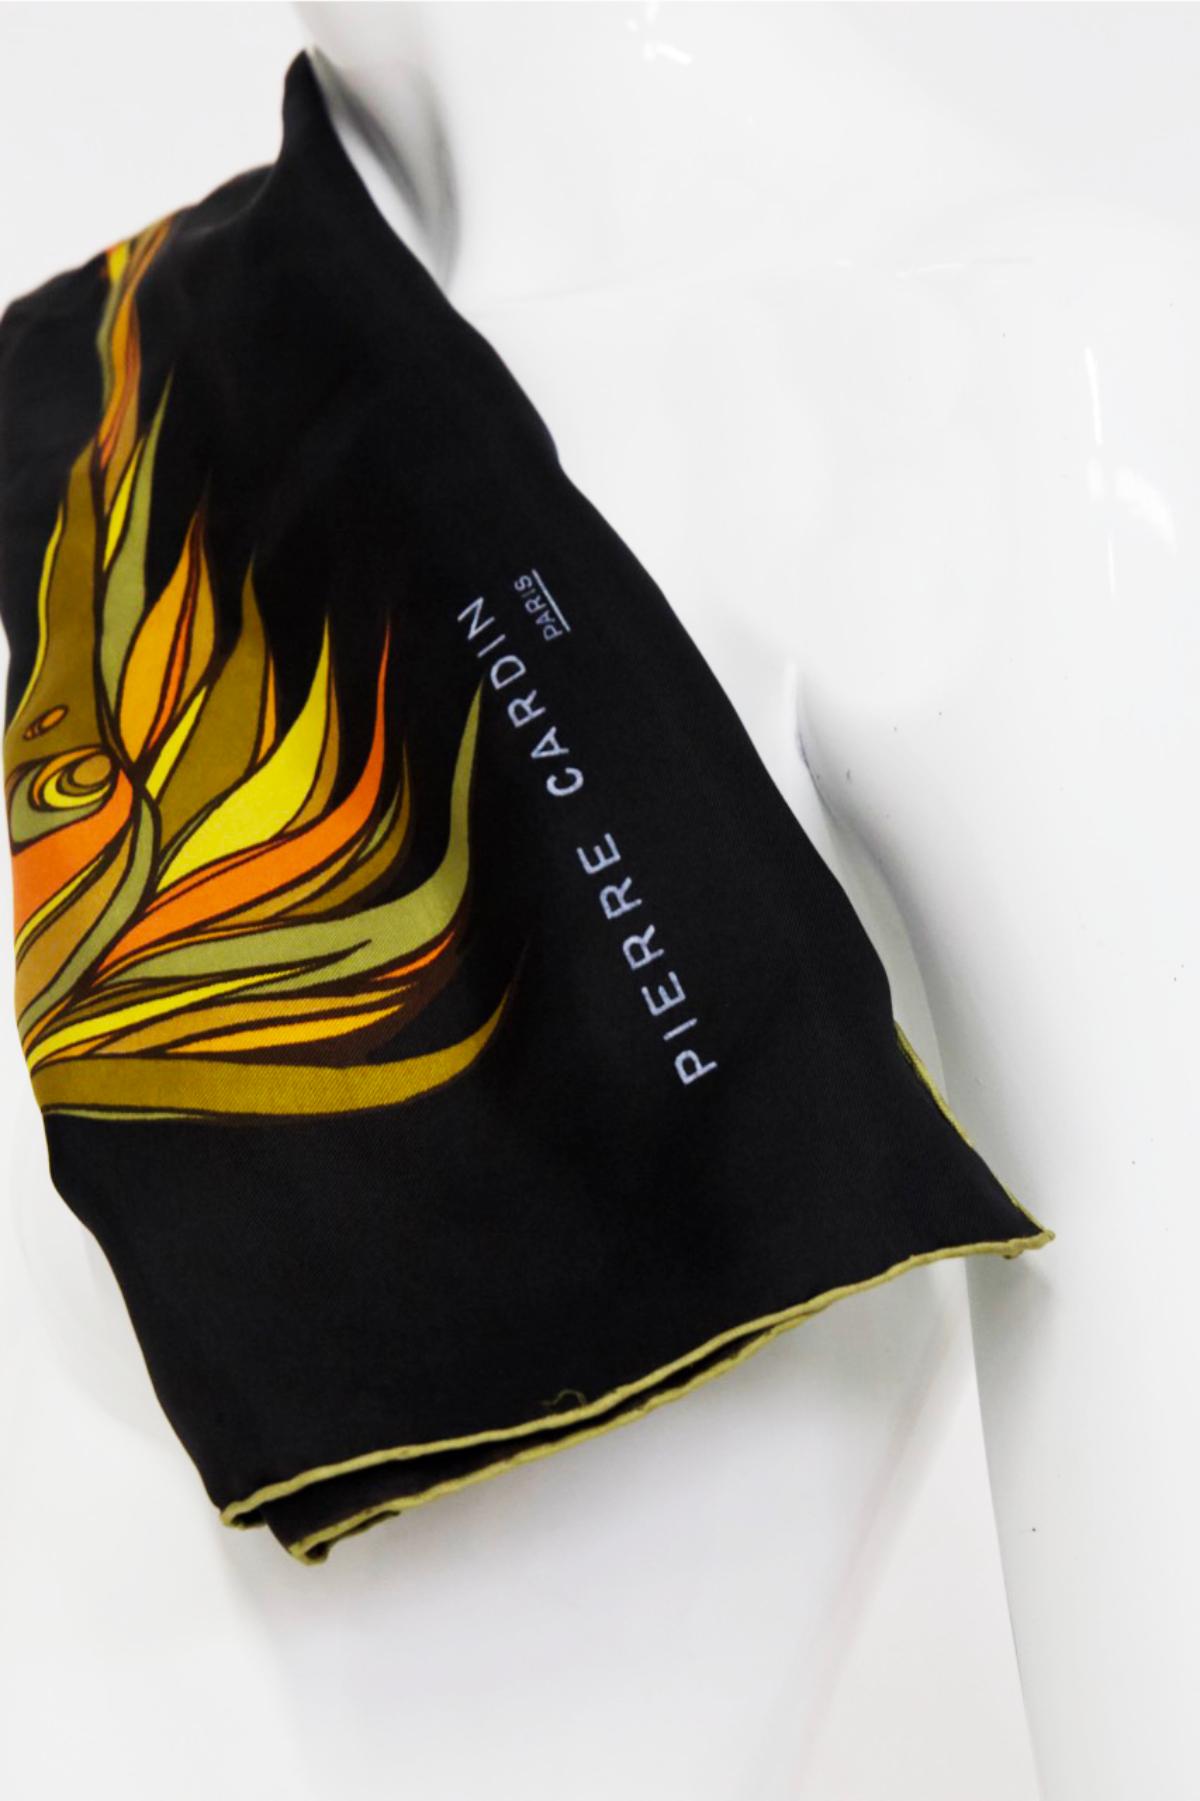 Belle écharpe en satin de soie noire dessinée par Pierre Cardin dans les années 1980, belle fabrication française. SIGNÉ.
Il est entièrement noir, bordé d'or, très élégant. Au centre, outre la signature, on trouve un motif asymétrique coloré en